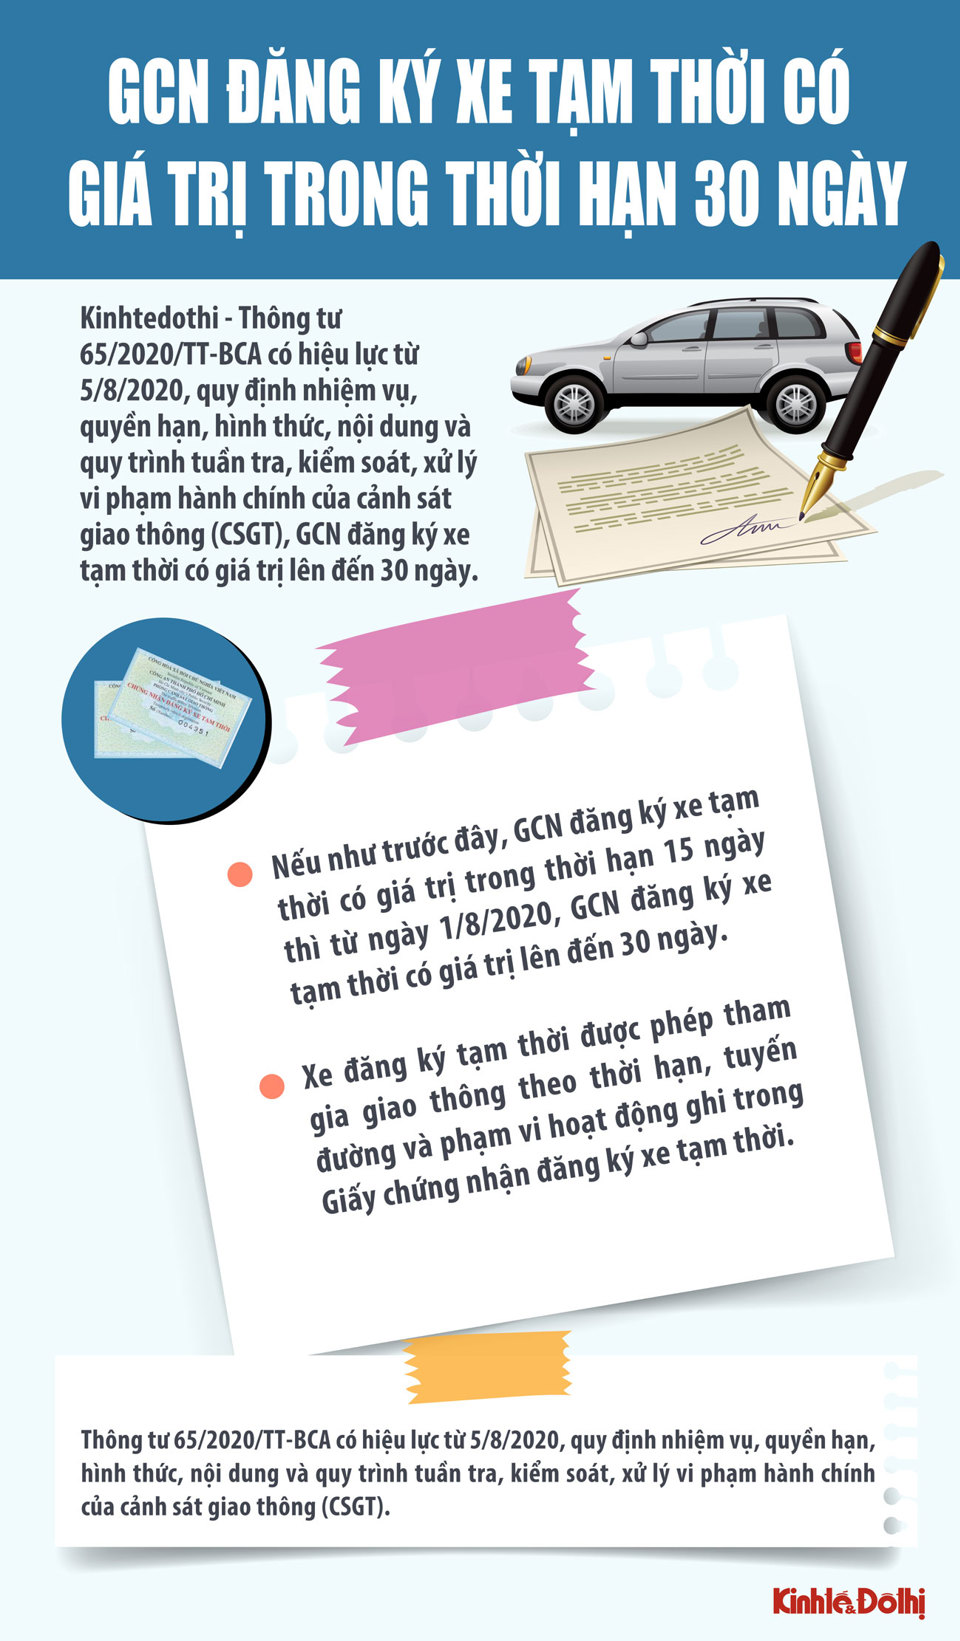 [Infographic] Giấy chứng nhận đăng ký xe tạm thời có giá trị trong 30 ngày - Ảnh 1